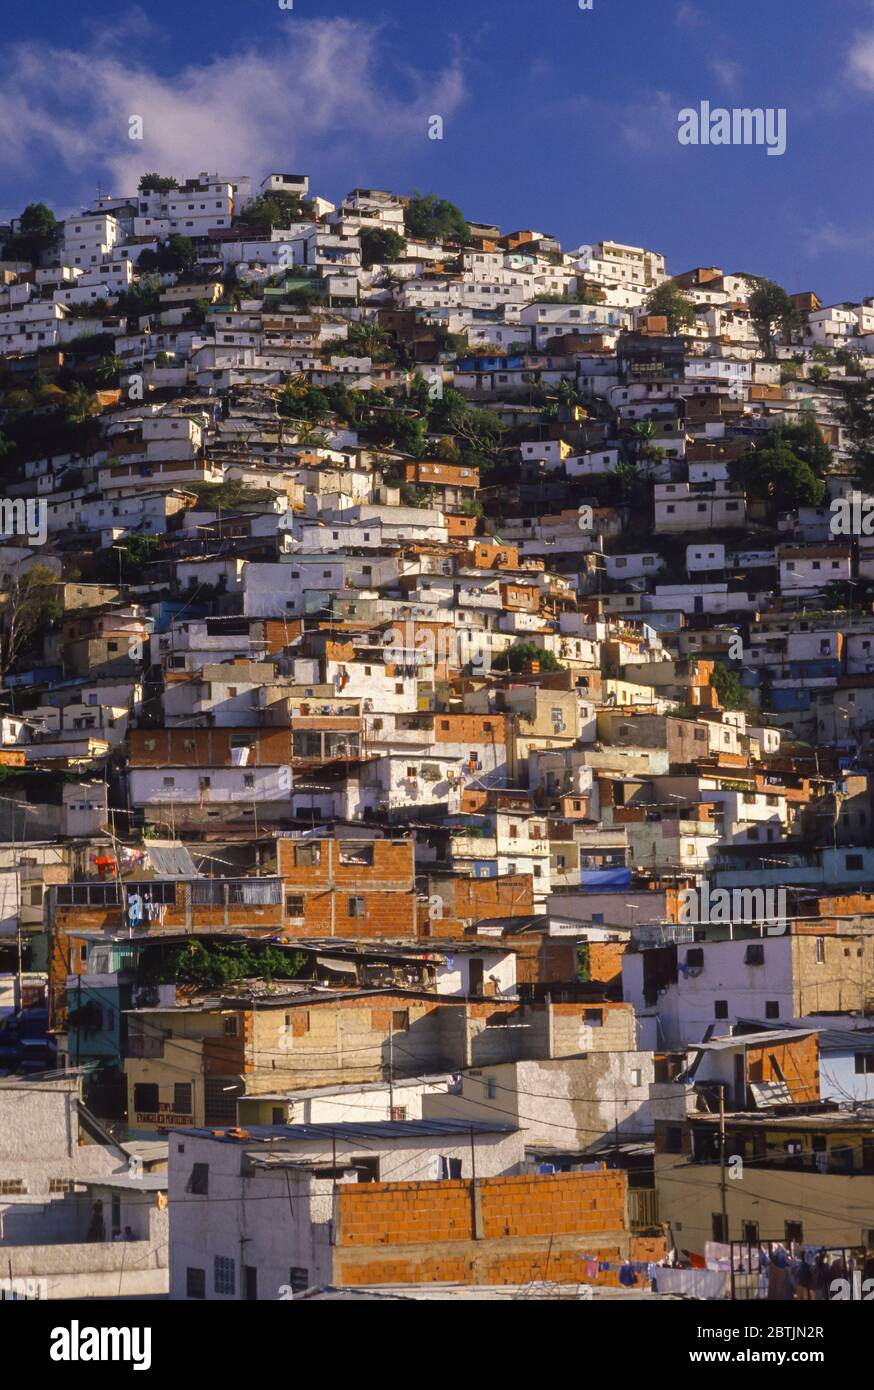 CARACAS, VENEZUELA, FEBRERO de 1987 - ranchitos de vivienda de bajos ingresos, barrios marginales, en la ladera de la colina. Foto de stock